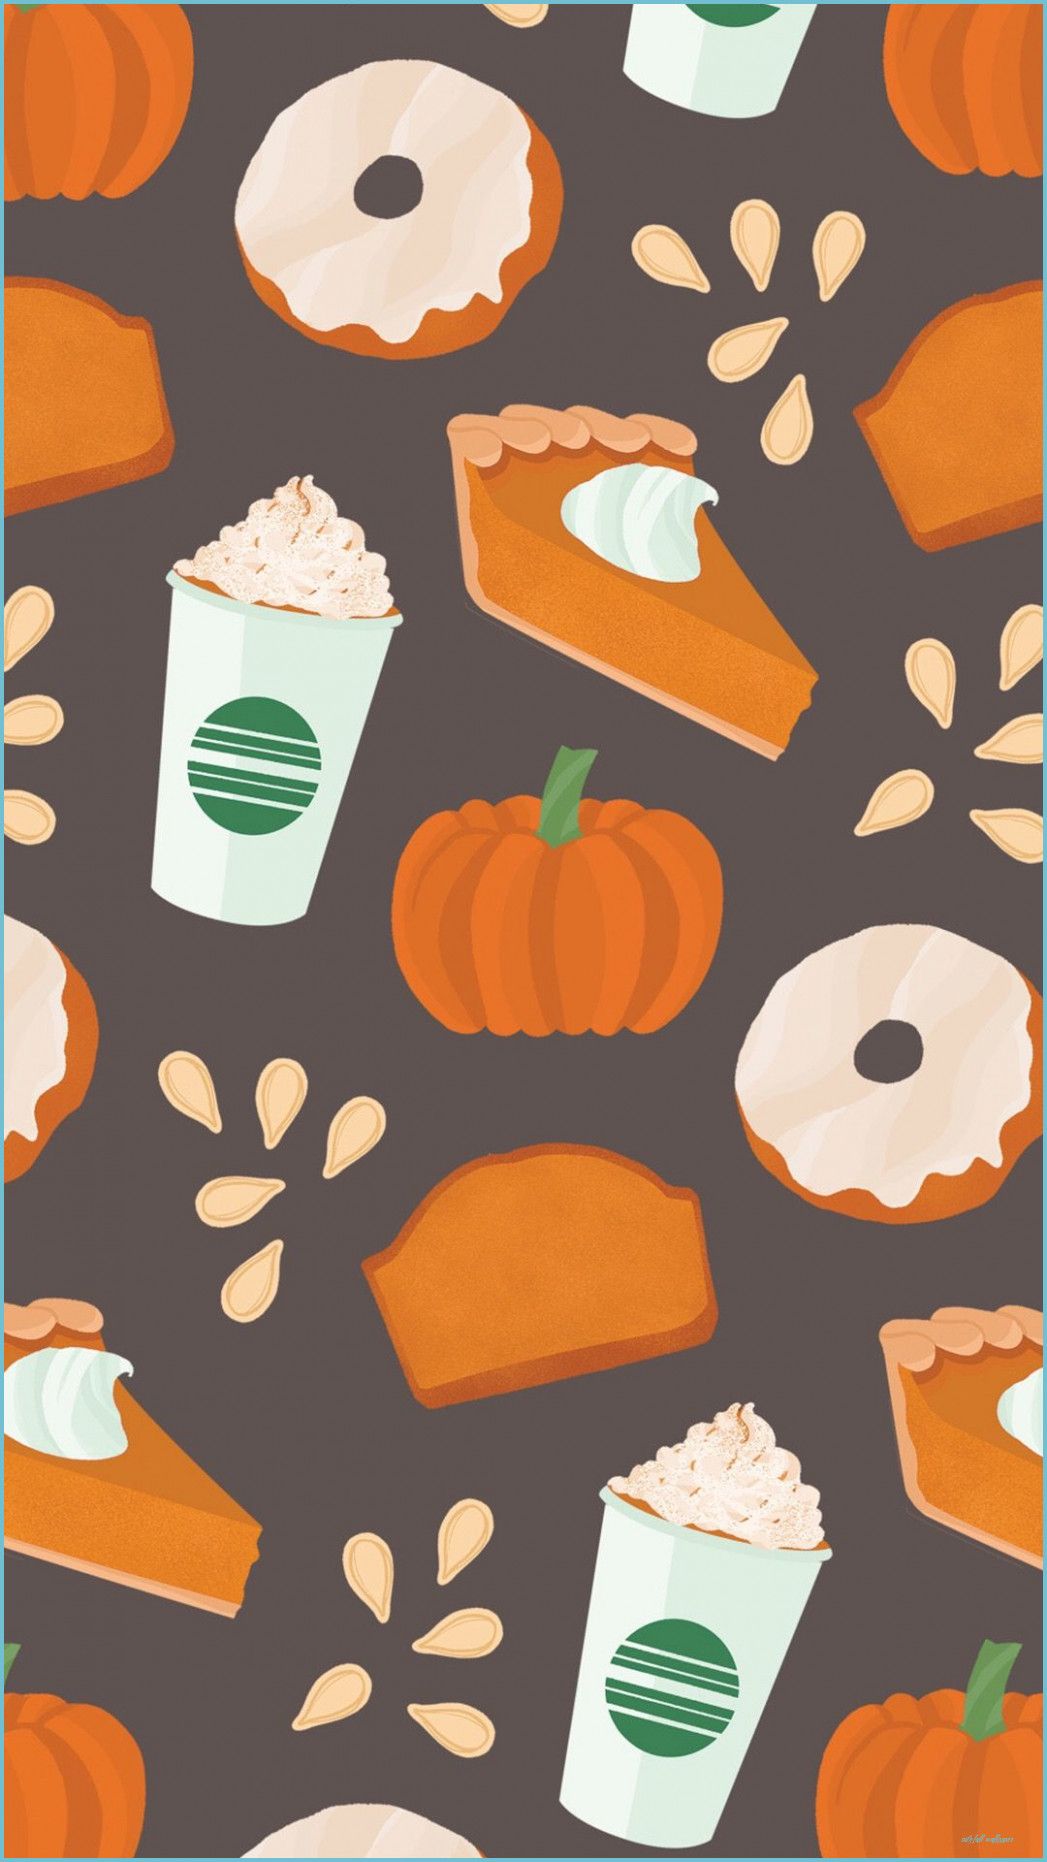 Fall Starbucks pumpkin spice iPhone background wallpaper home fall wallpaper